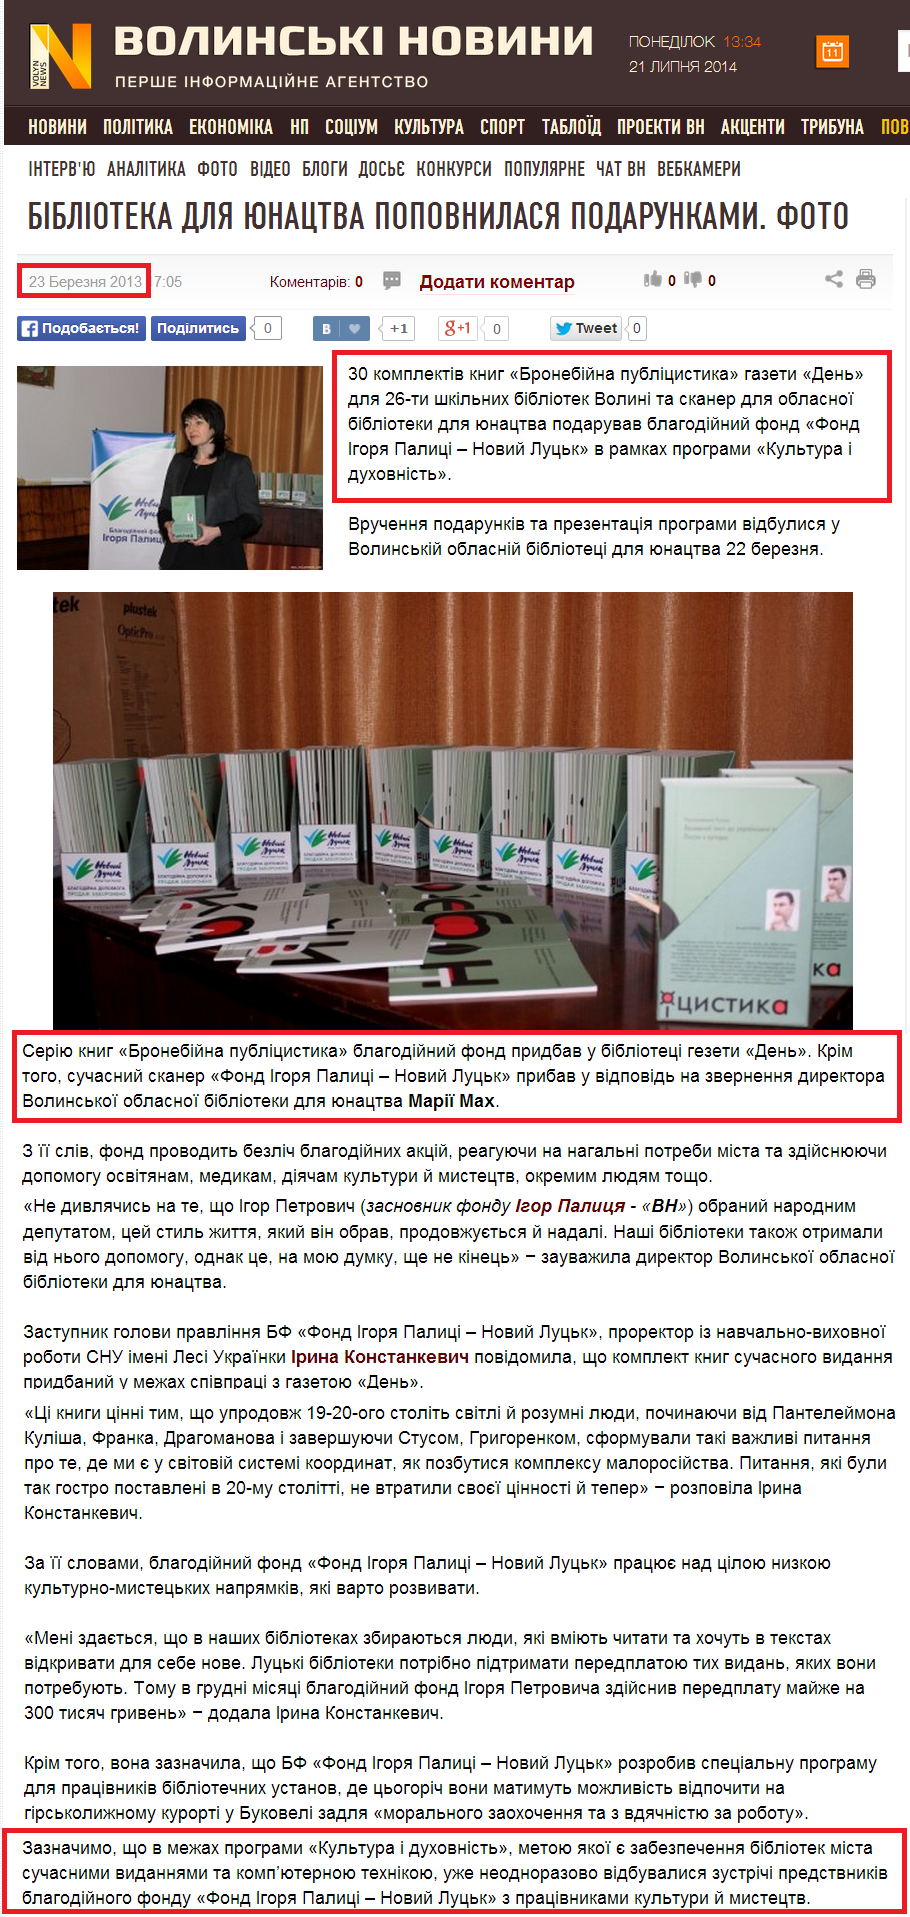 http://www.volynnews.com/news/archive/biblioteka_dlya_yunatstva_popovnylasya_podarunkamy_foto/